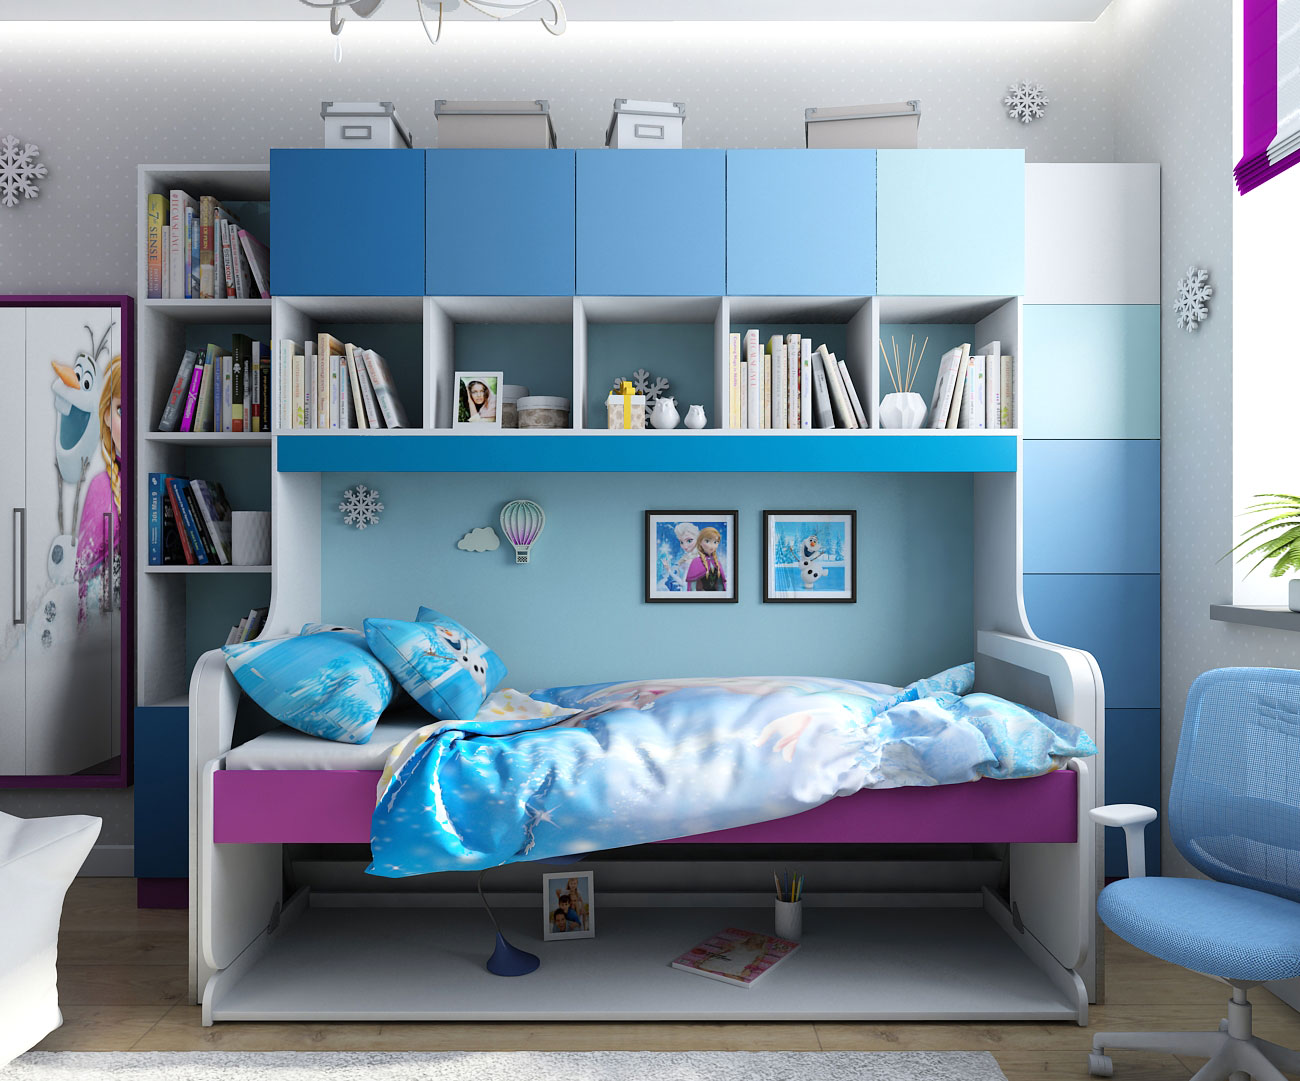 imagen de Diseño de interiores en el estilo de los niños de "congelado" en Chernigov en 3d max vray 1.5